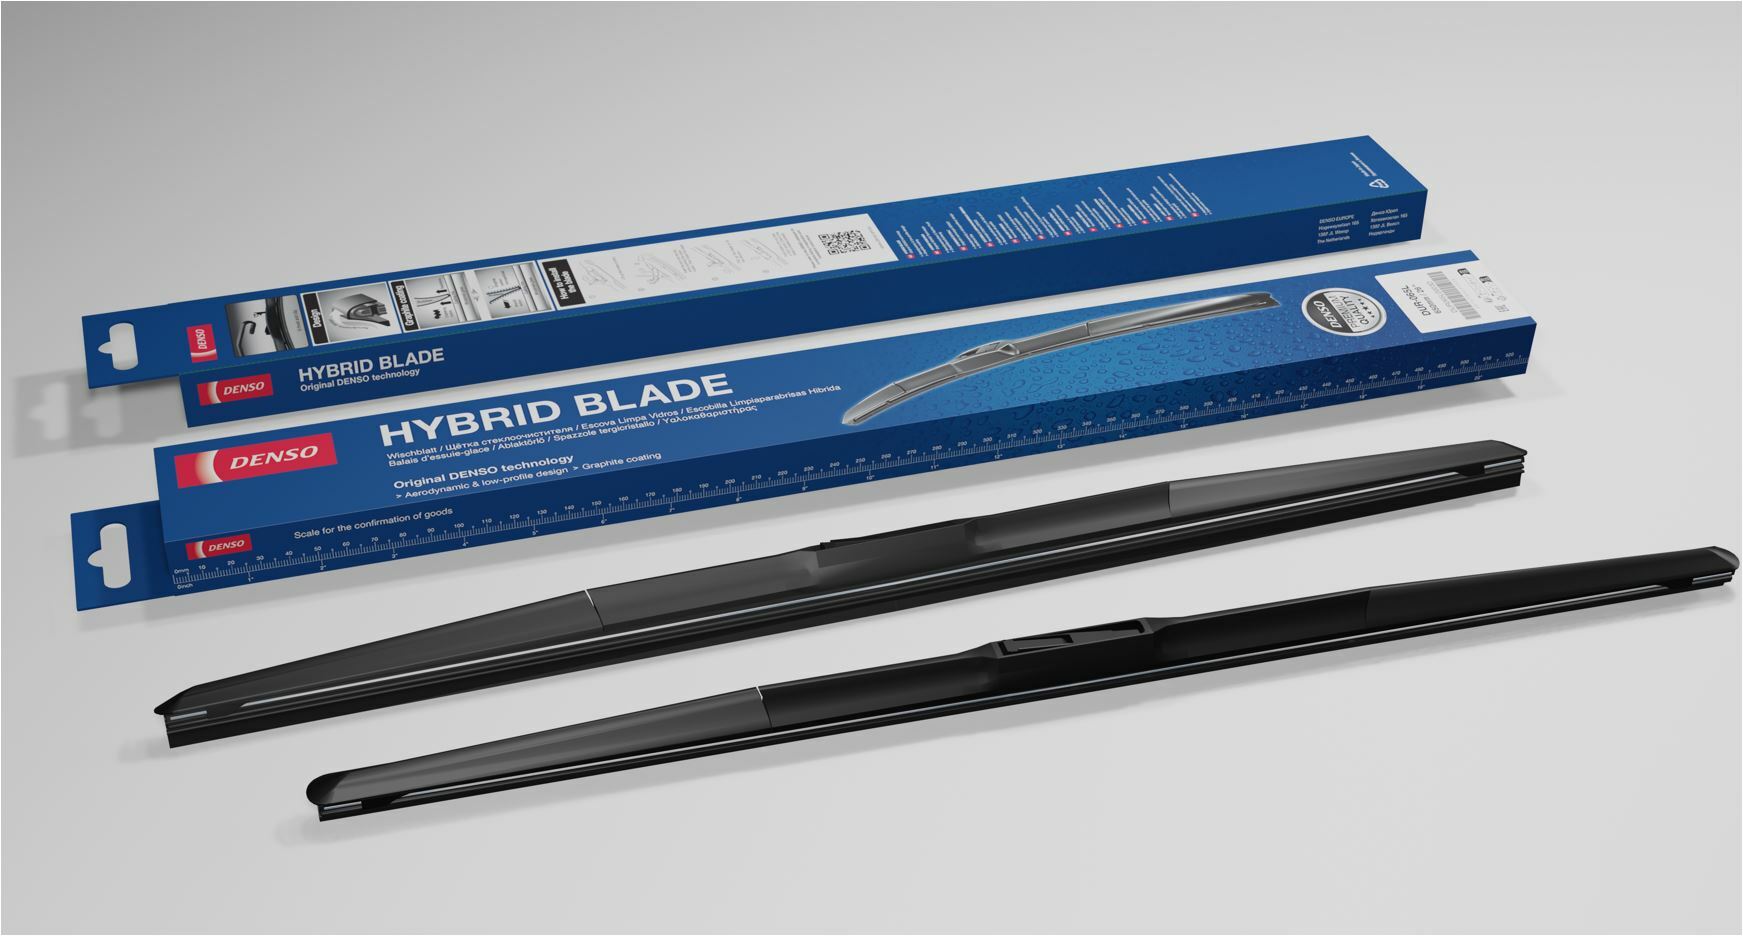 La gama de limpiaparabrisas Hybrid Blade de DENSO ha cambiado de nombre y su embalaje para reflejar su calidad premium de equipo original